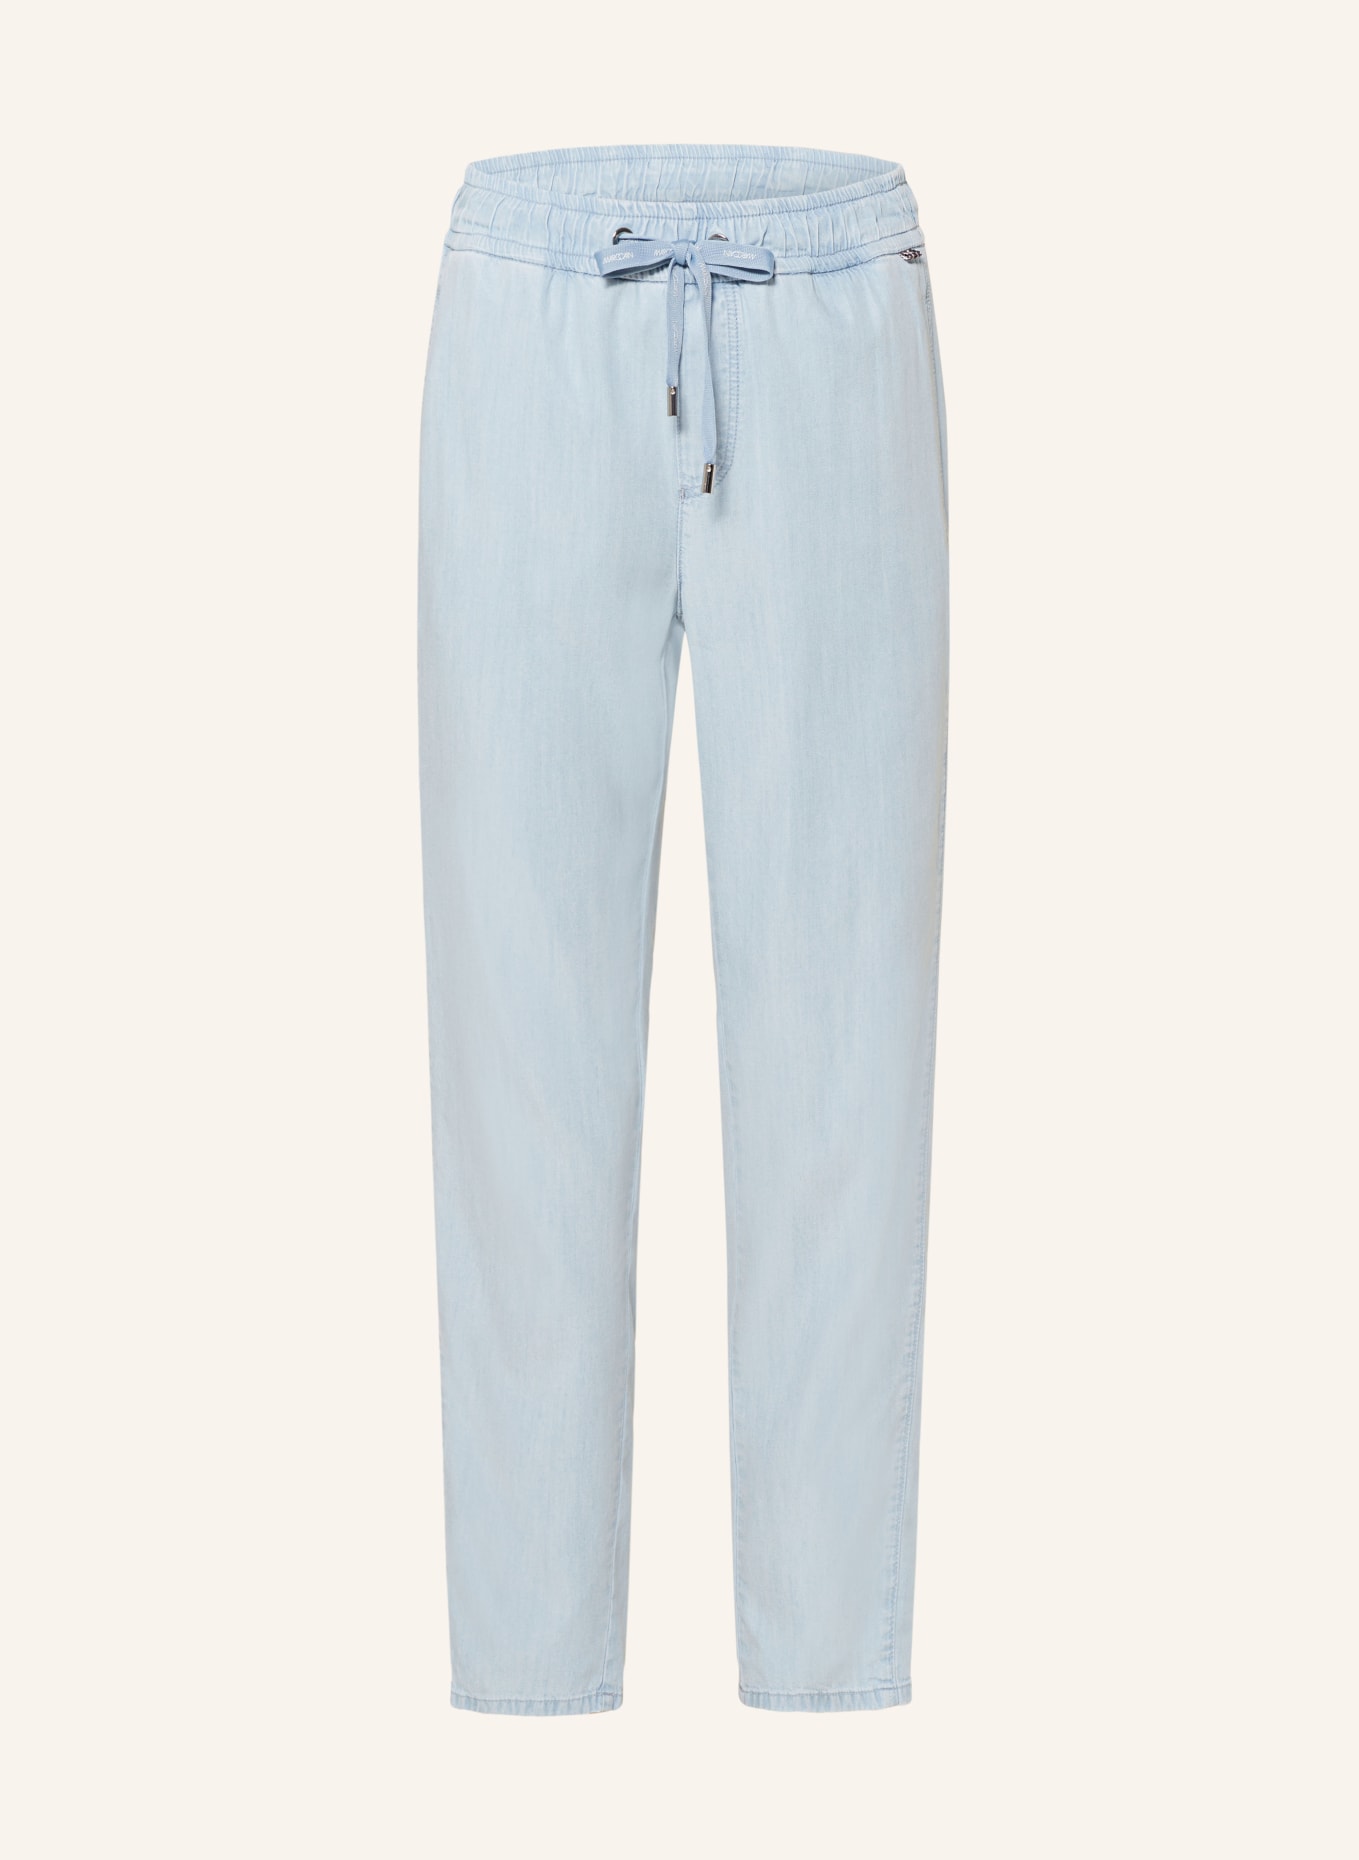 MARC CAIN Spodnie RIVERA w stylu jeansowym, Kolor: 351 baby blue (Obrazek 1)